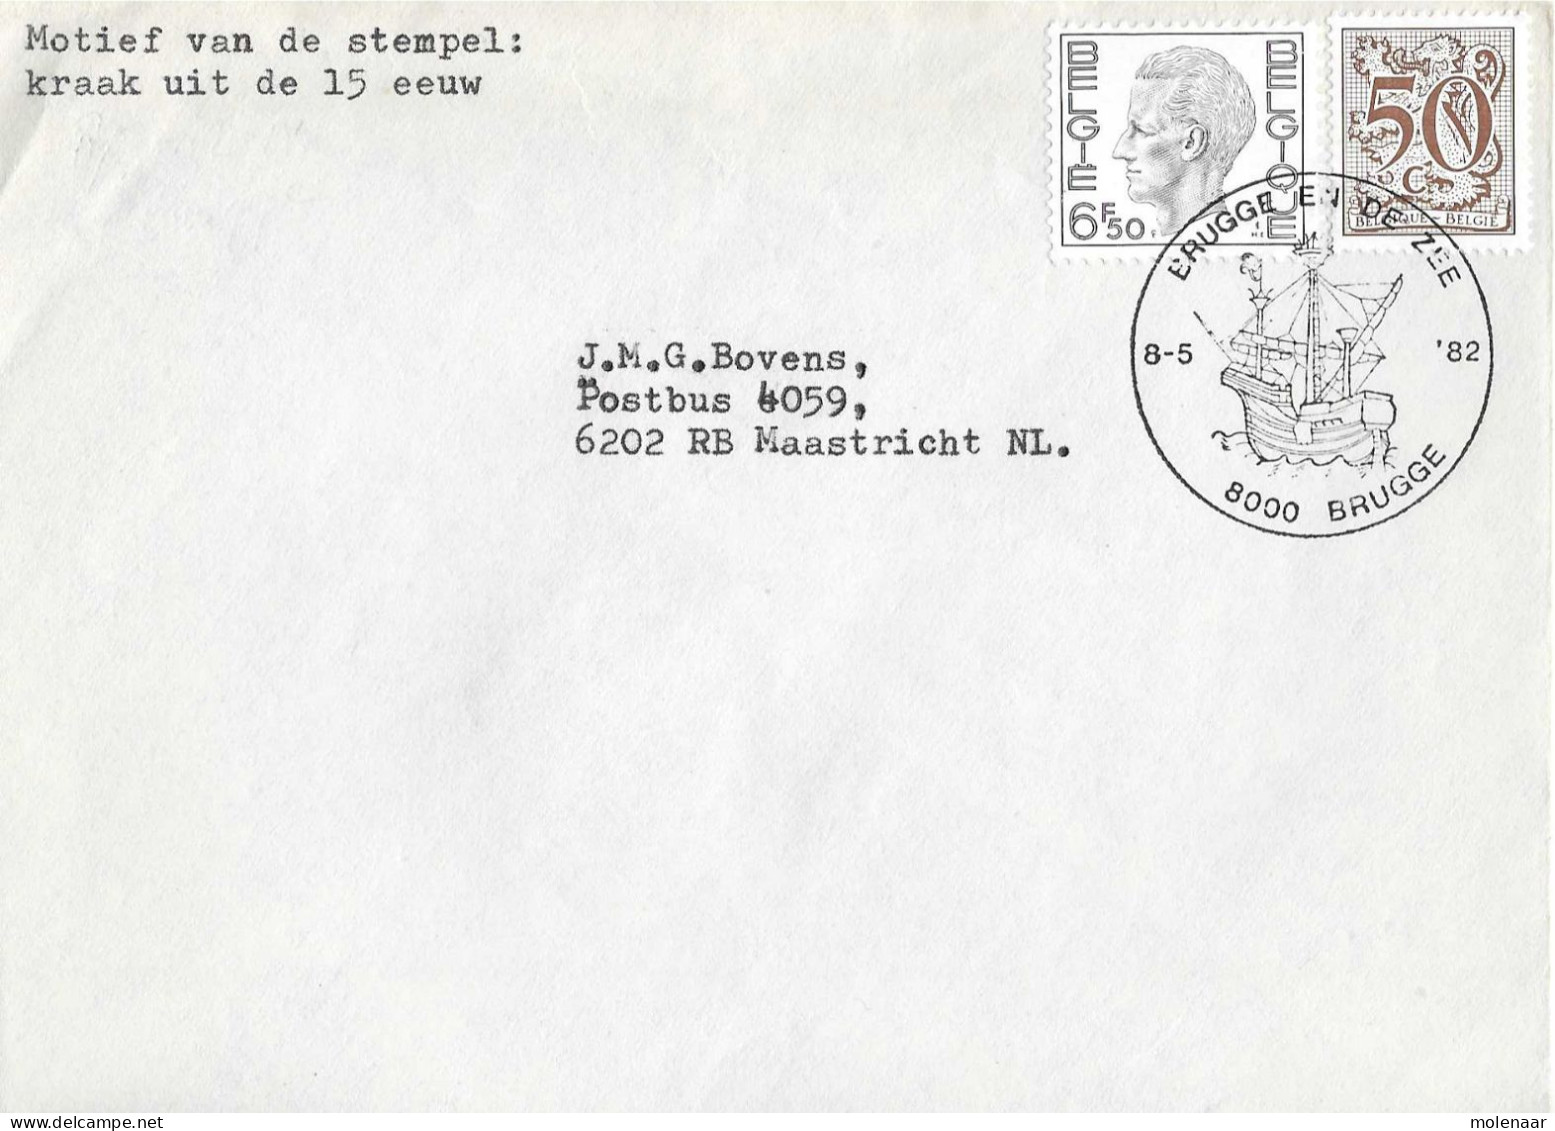 Postzegels > Europa > België > 1951-... > 1981-1990 > Brief Uit 1982 Met 2 Zegels (17041) - Cartas & Documentos